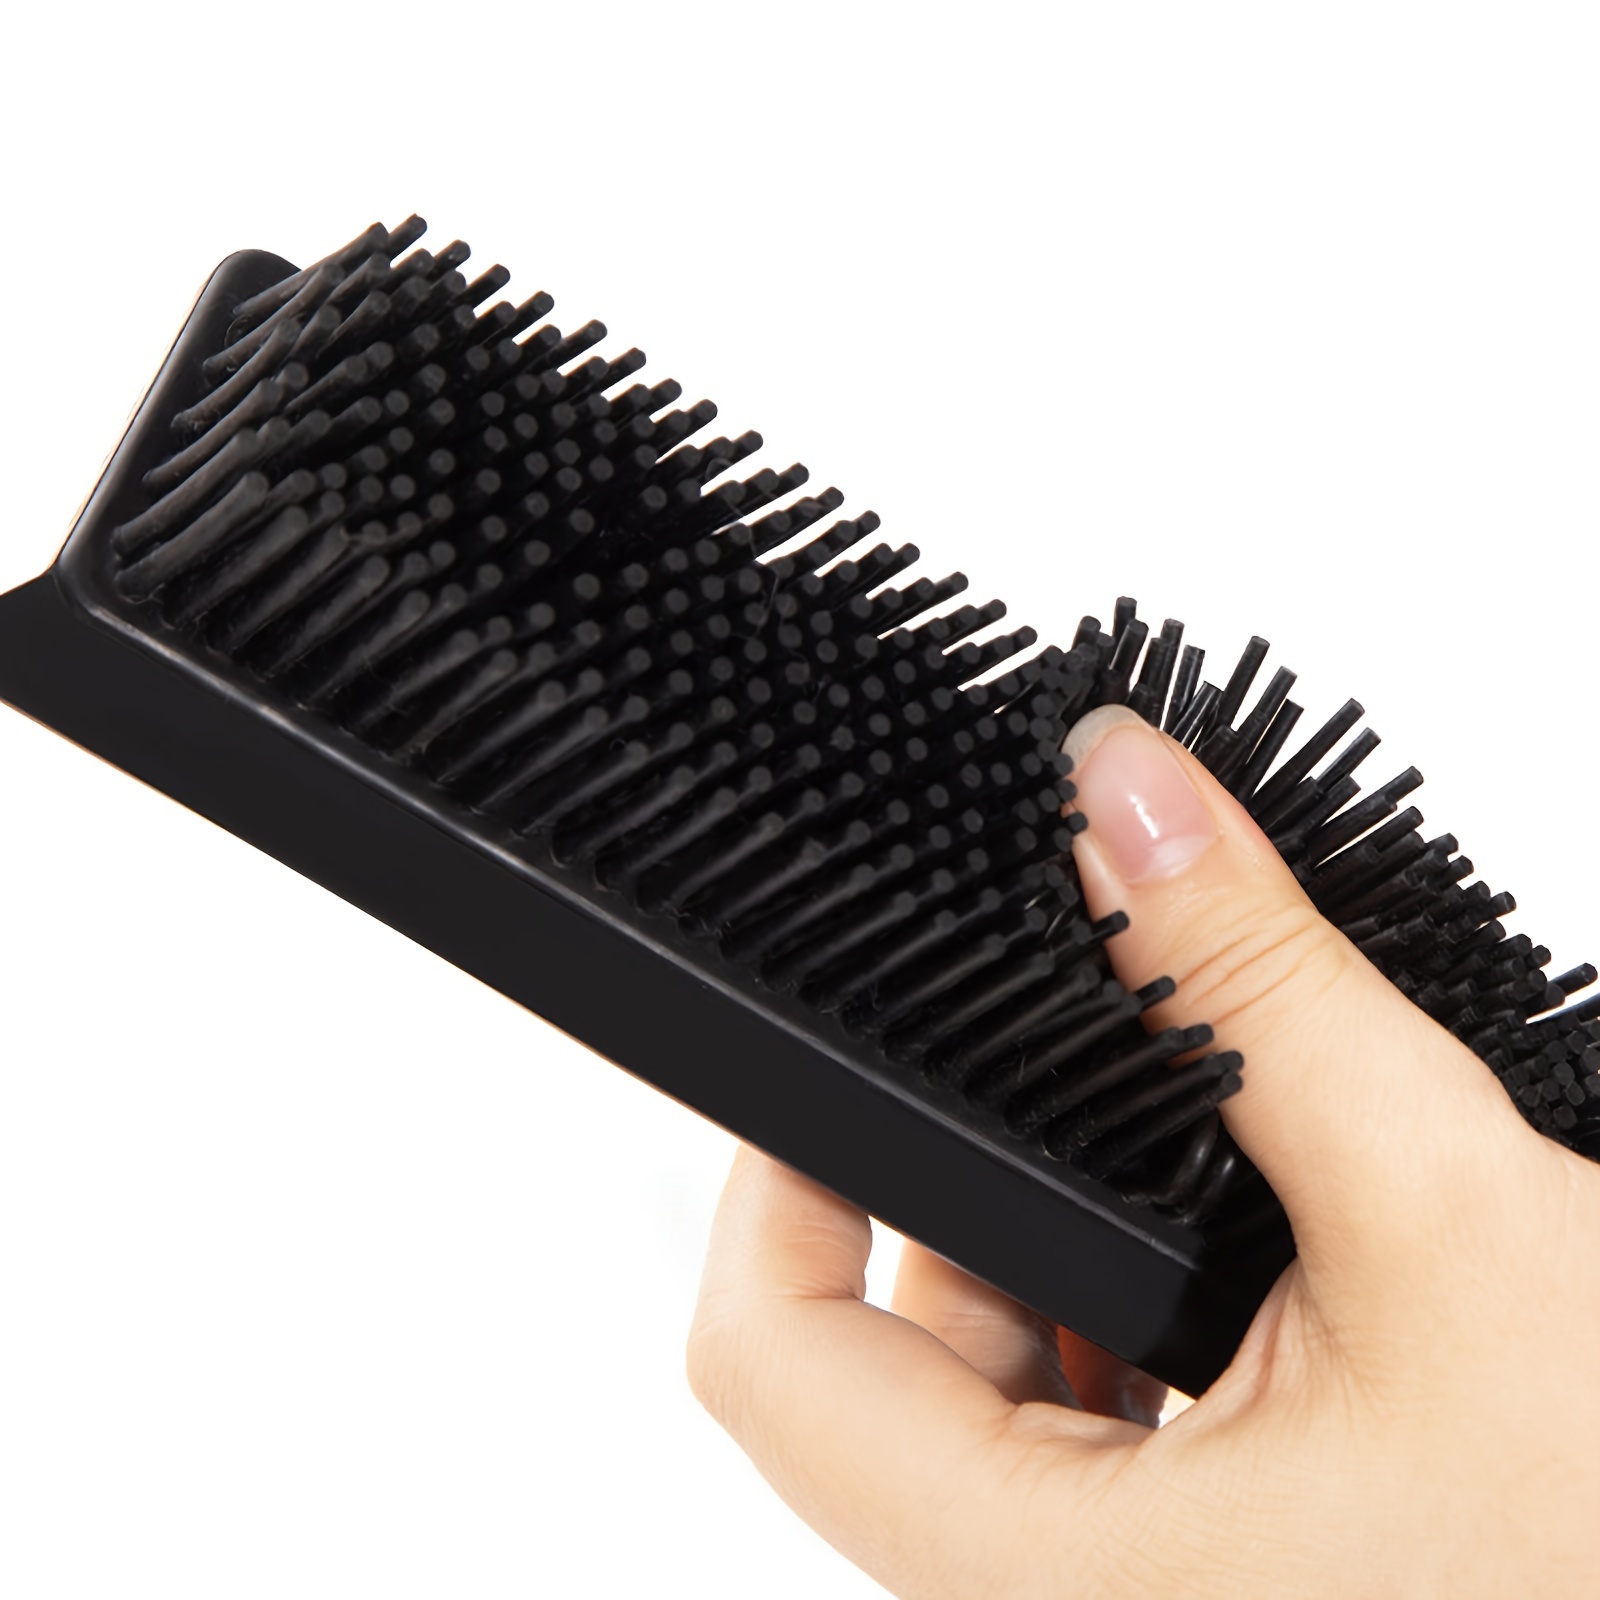 Novità: ❤️ REBRUSH, la macchina per pulire le spazzole by HAIR